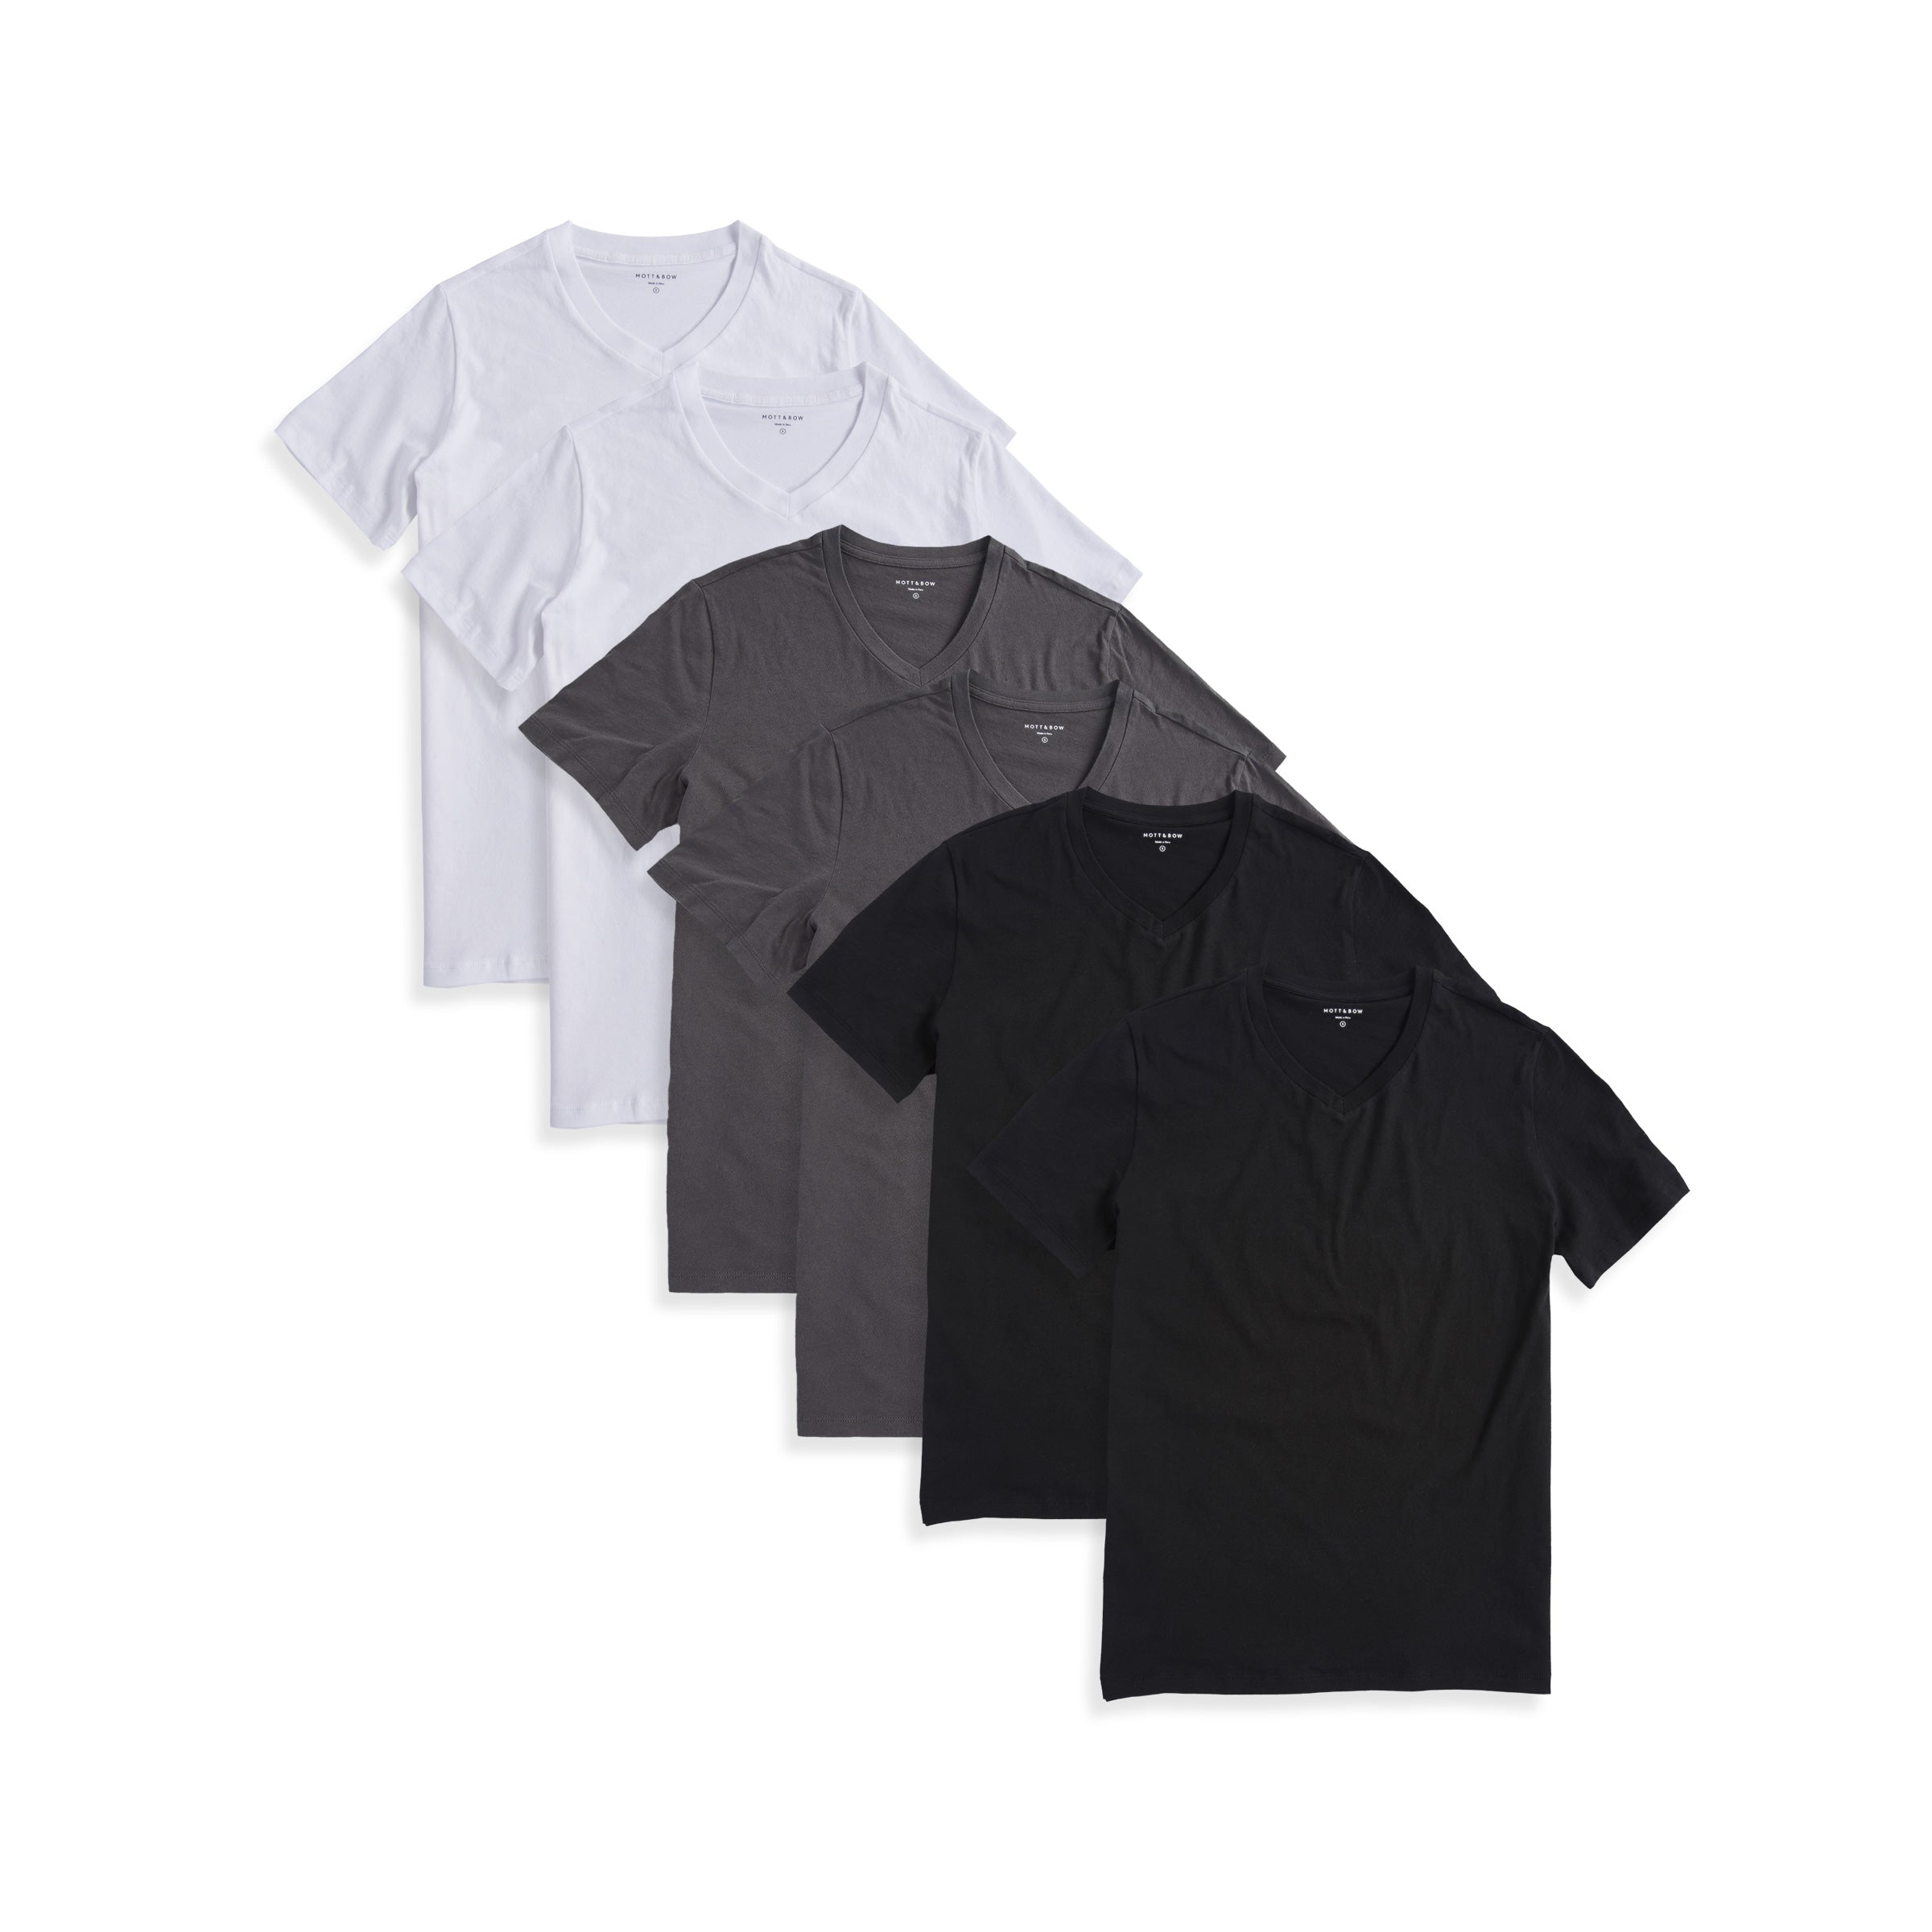 Men wearing Black/Dark Gray/White Classic V-Neck Driggs 6-Pack tees